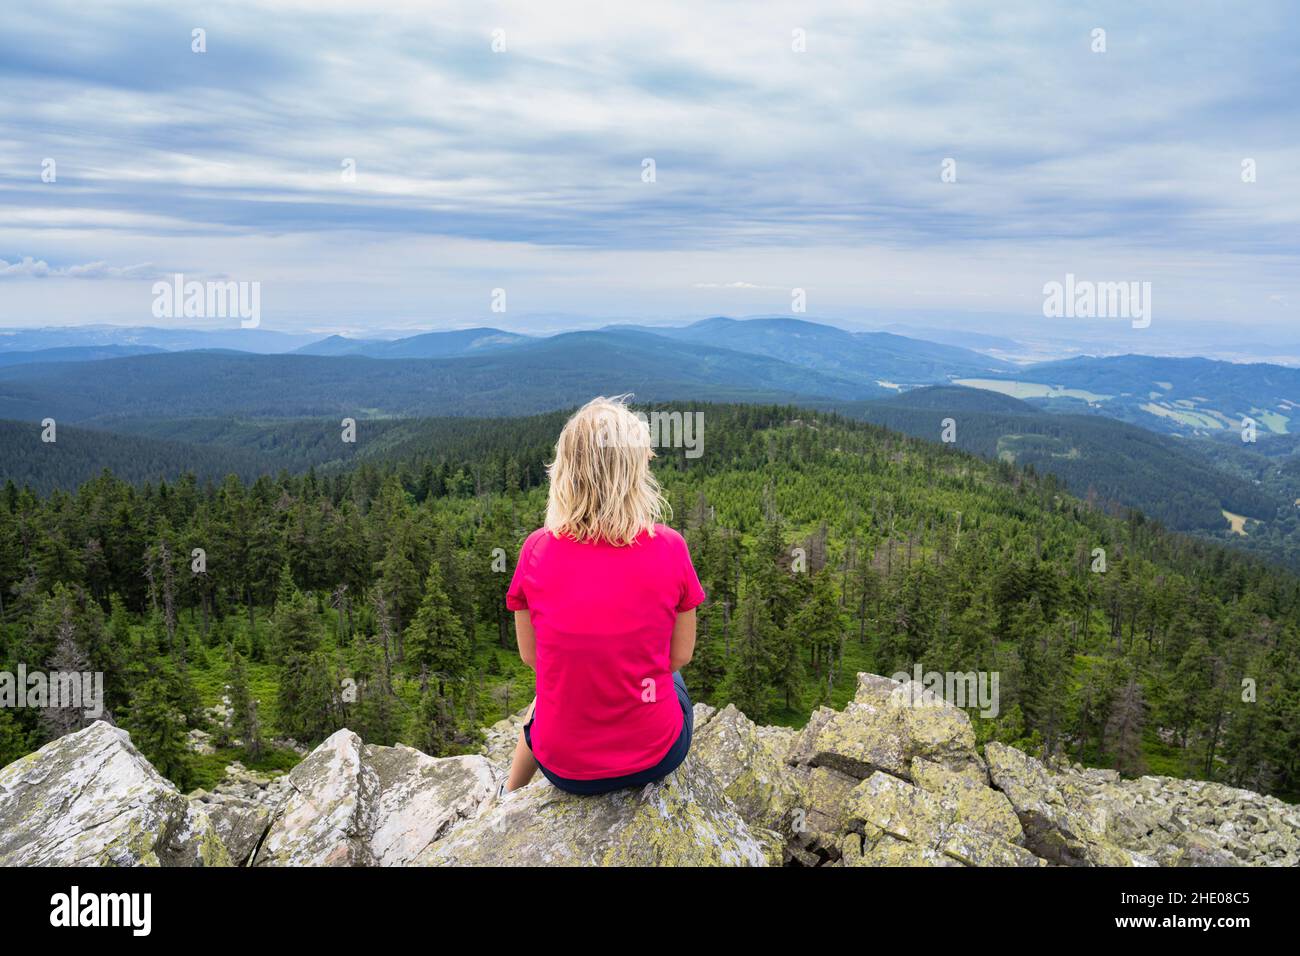 Mädchen Reisende Gefühl frei genießen Blick auf Mountains.Woman sitzt auf Felsen nach climbing.Adventure, Sport, Aktivität, Fernweh Freiheit Reisekonzept. Stockfoto